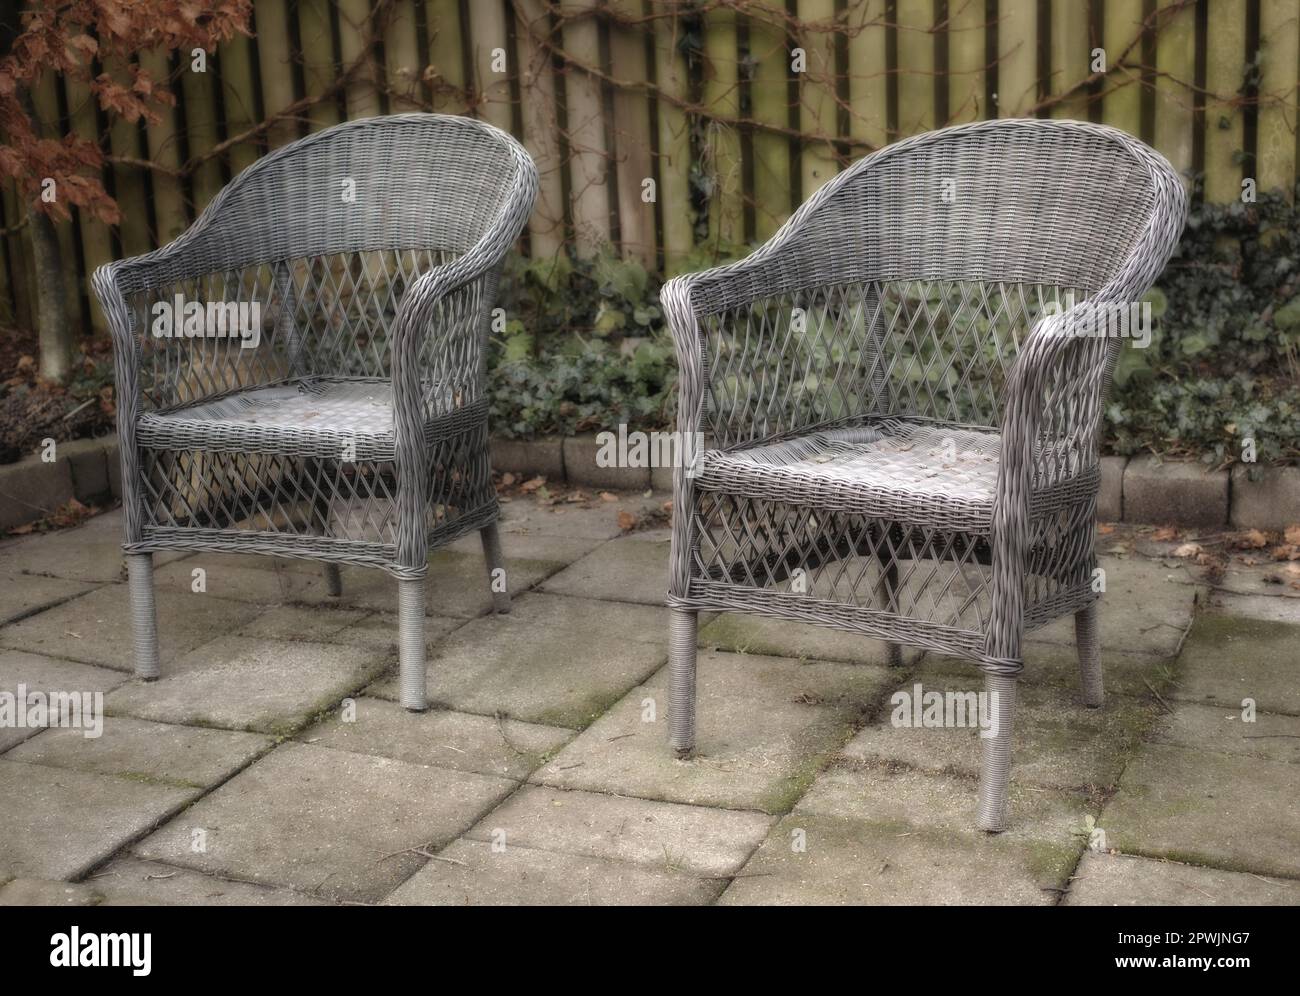 Gartenstühle auf einer Terrasse im Garten im Garten im Sommer. Alte,  rustikale und alte Gartenmöbel dienen zum Entspannen und zum Sitzen und  Entspannen Stockfotografie - Alamy